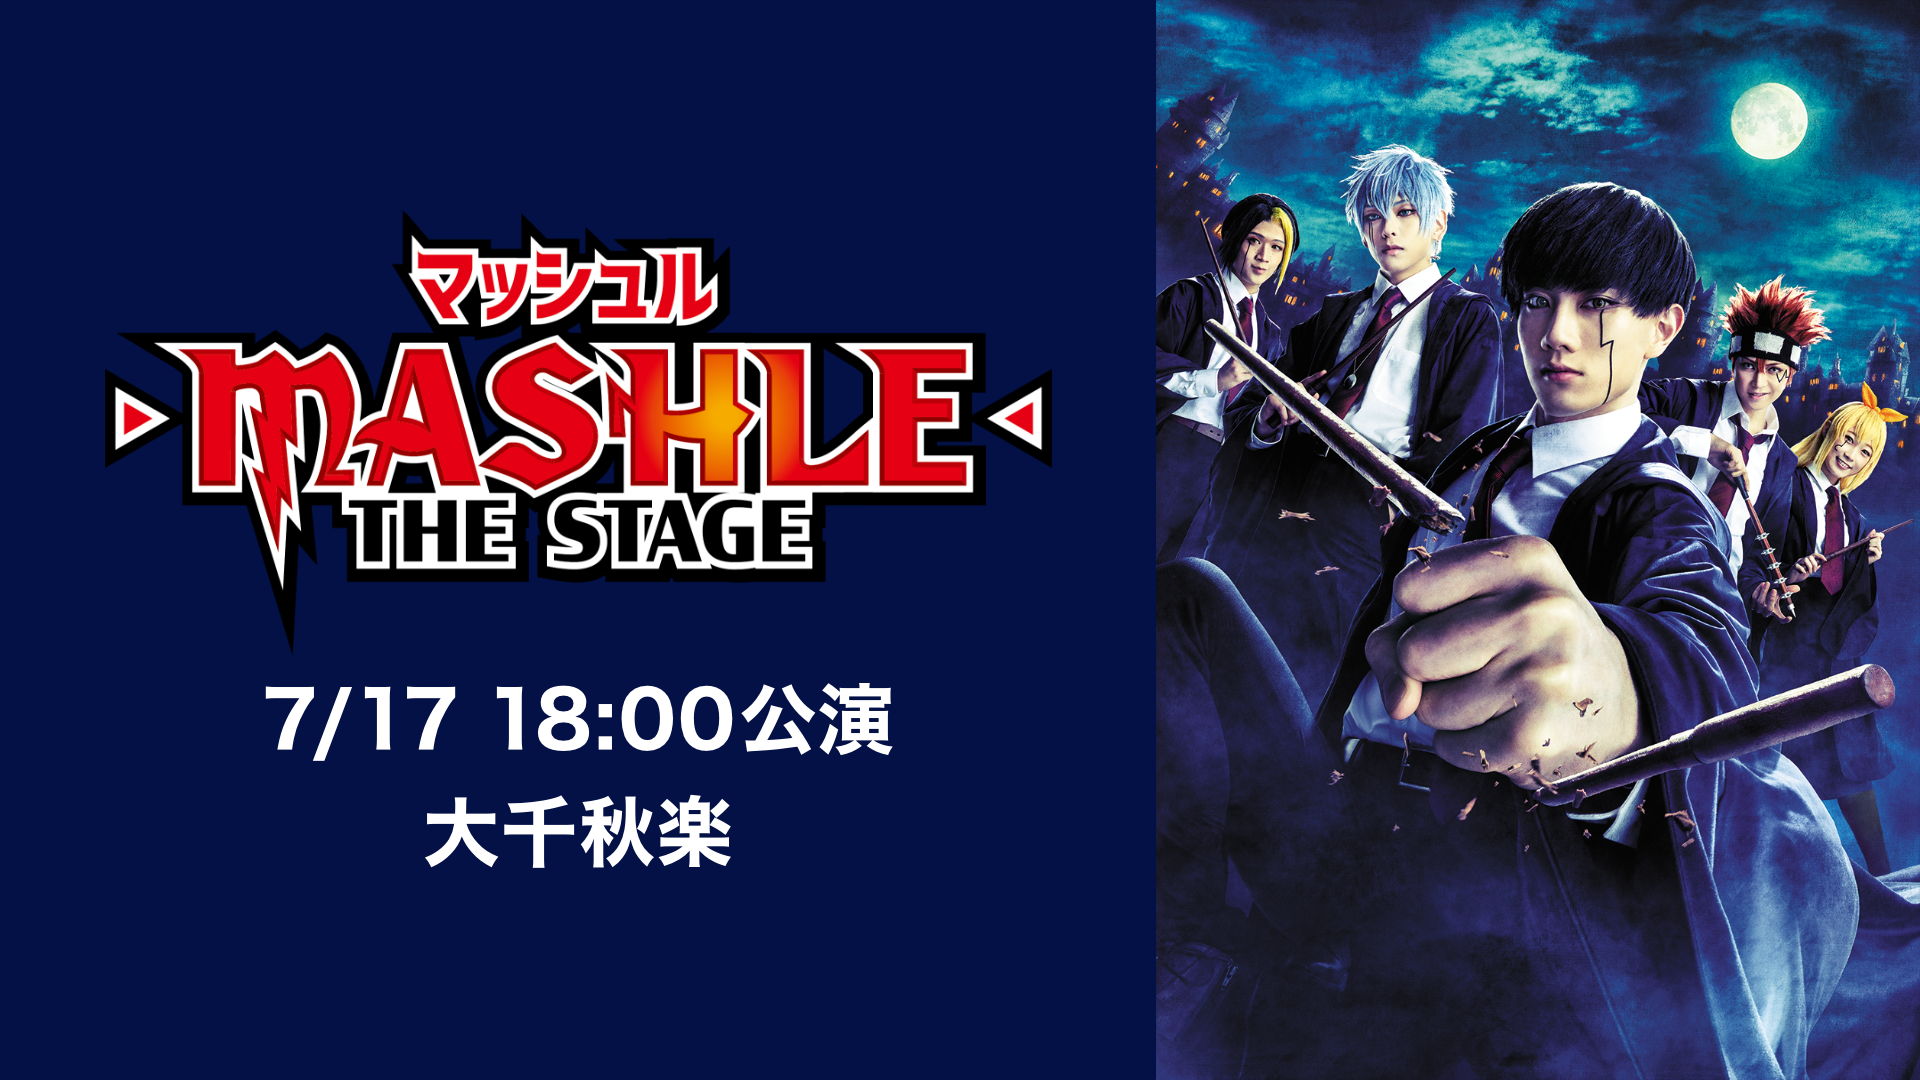 マッシュル-MASHLE-」THE STAGE 7/17 18:00公演 大千秋楽(アニメ 